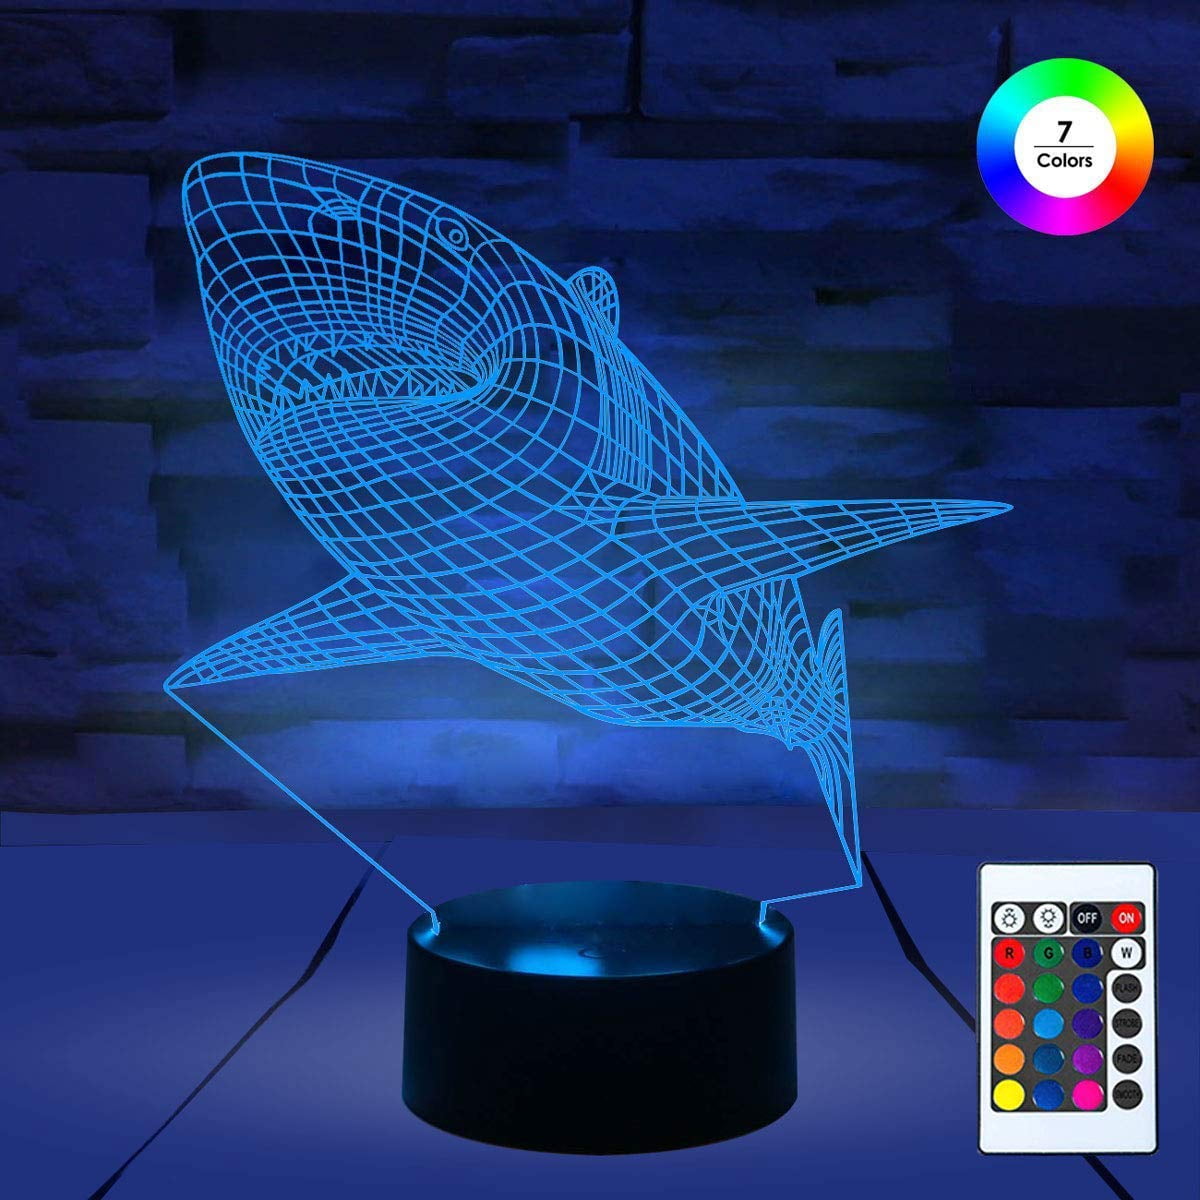 Shark 3D Illusion LED Night Light 7 Color Change Desk Lamp Bedroom Table Lights 